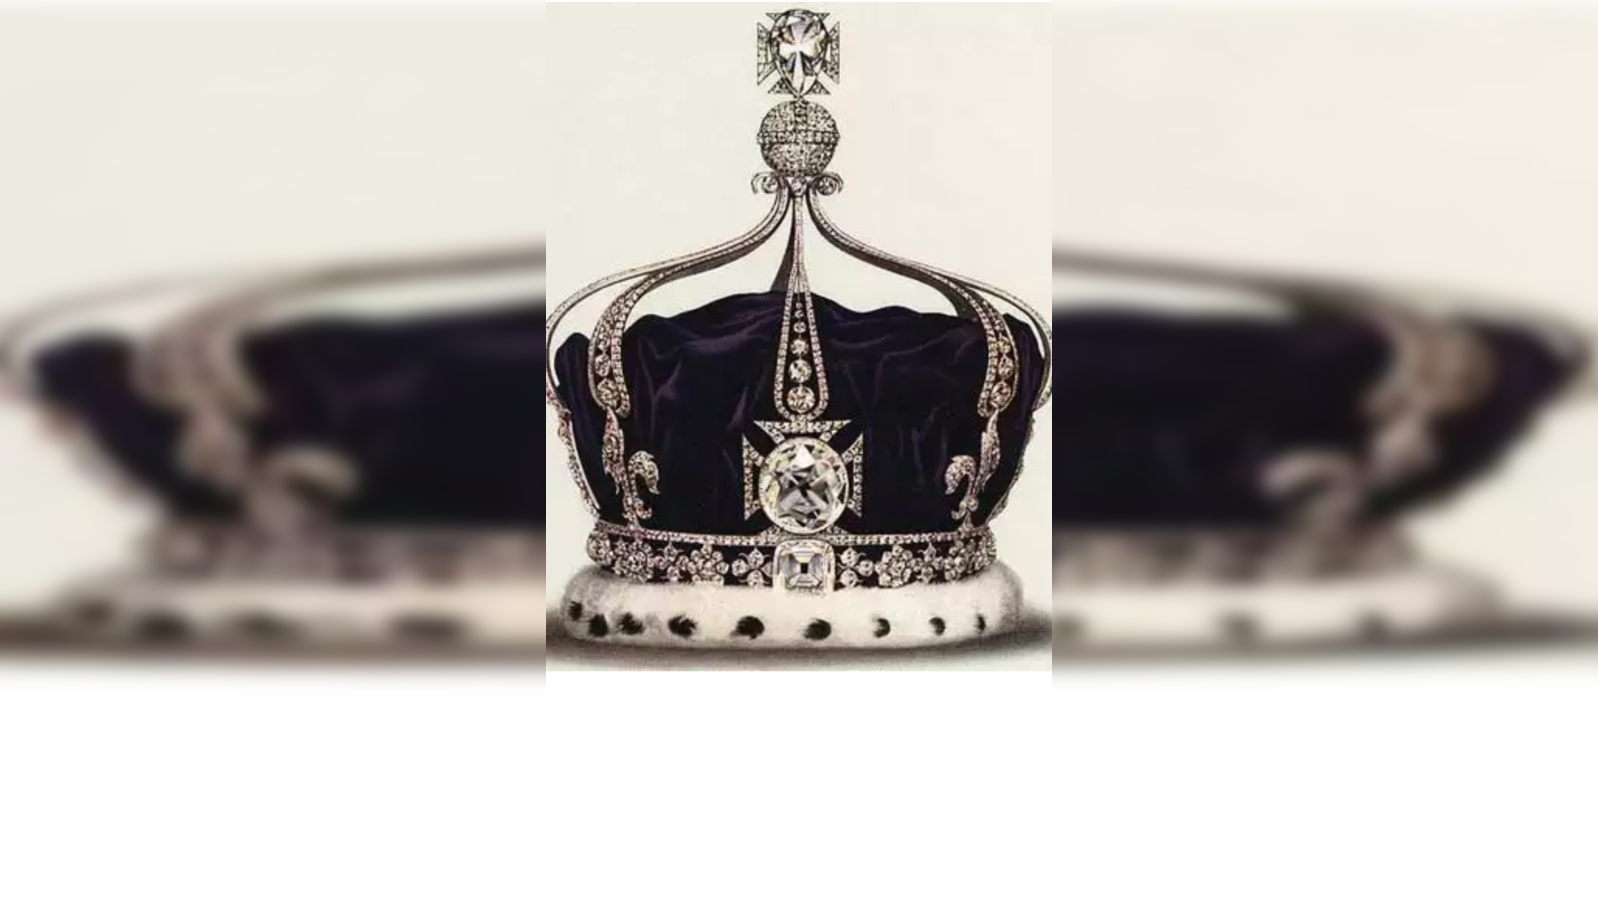 Who Will Own Queen Elizabeth II's Kohinoor Crown Now?